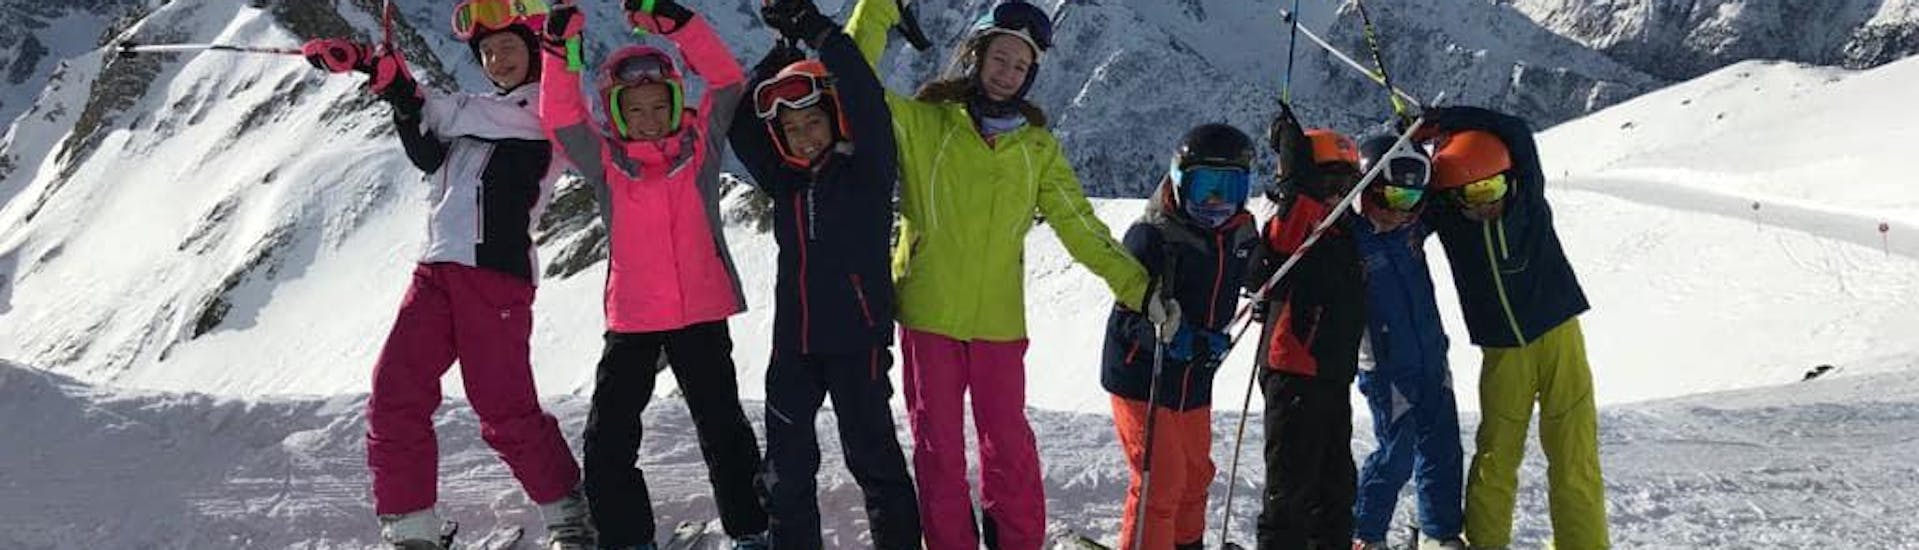  Partecipanti felici a Pontedilegno durante una delle lezioni di sci per principianti.